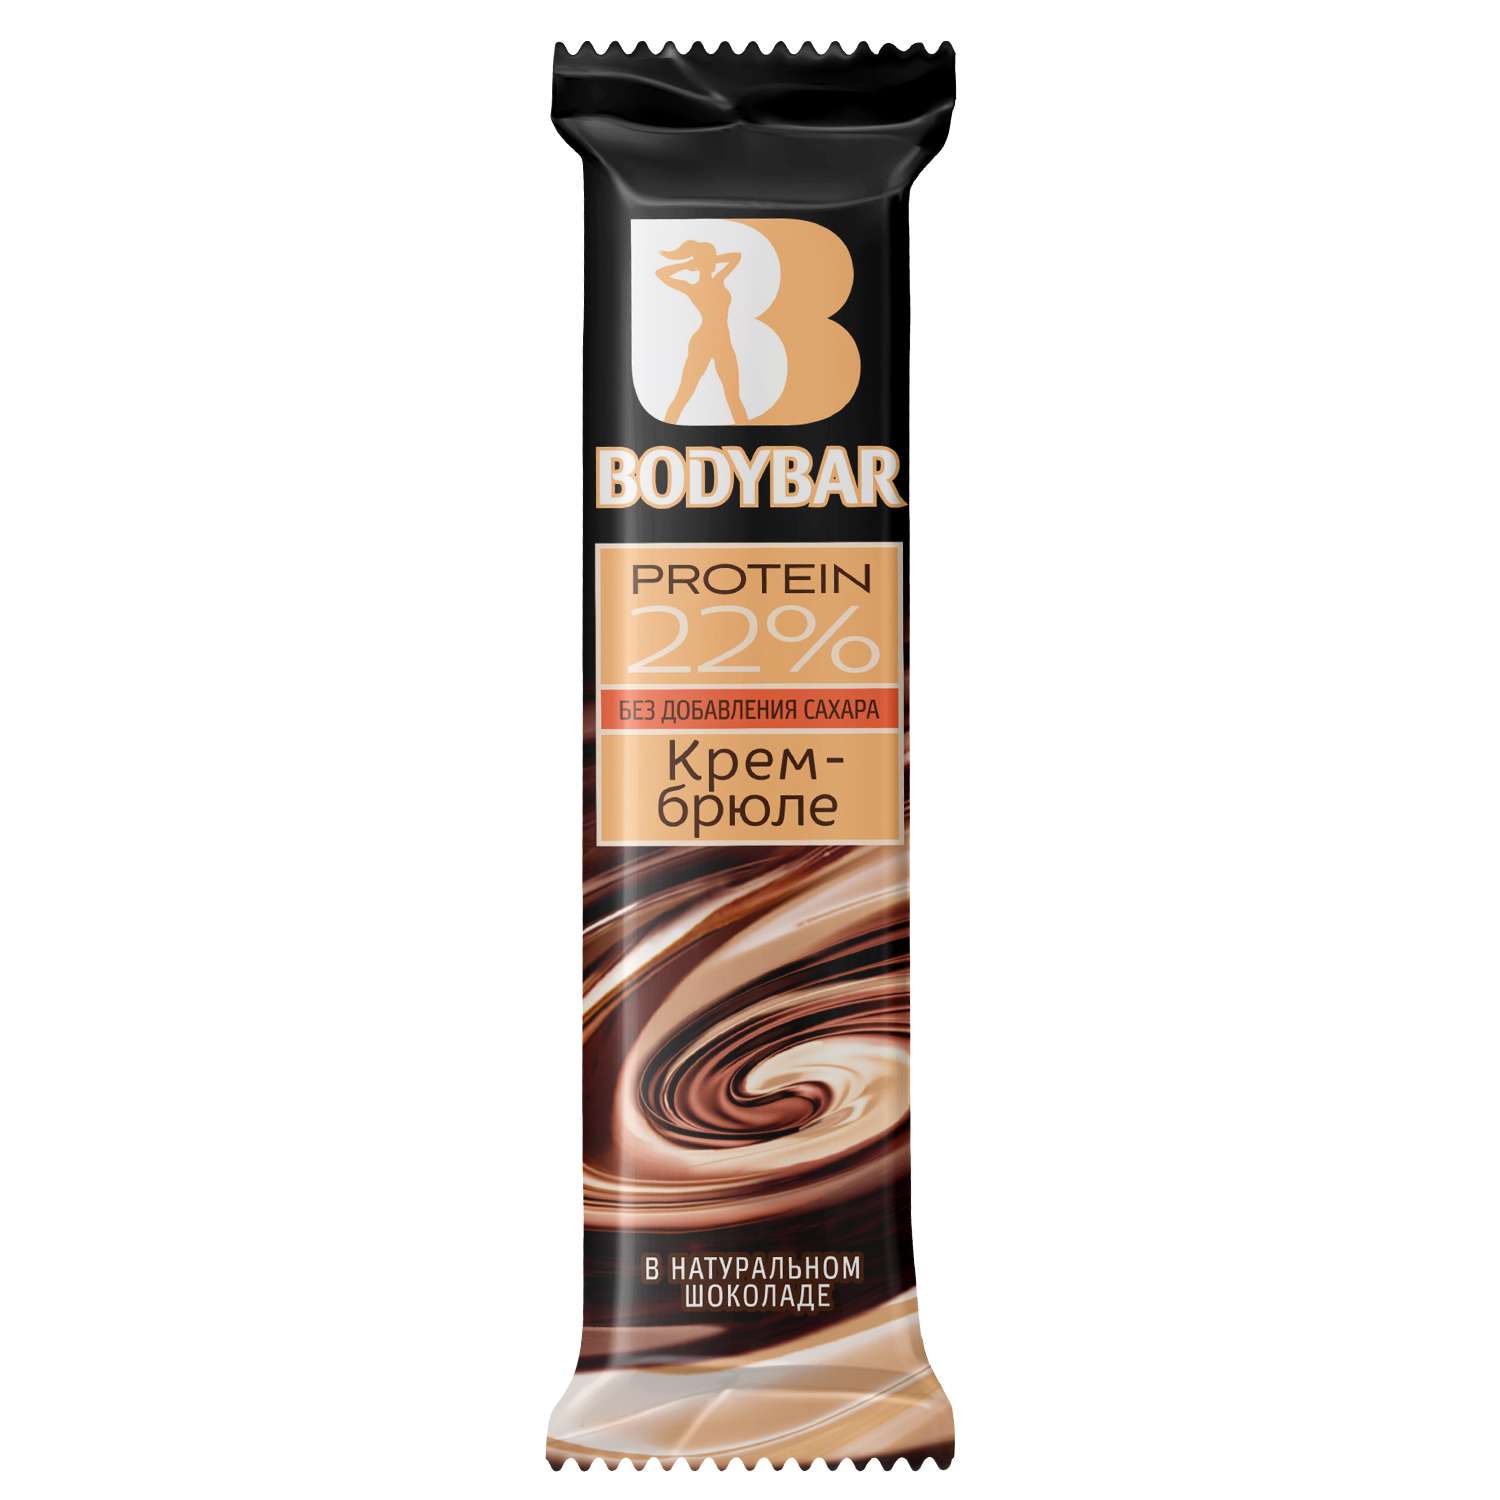 Батончик BodyBar протеиновый крем-брюле в горьком шоколаде 50г - фото 1